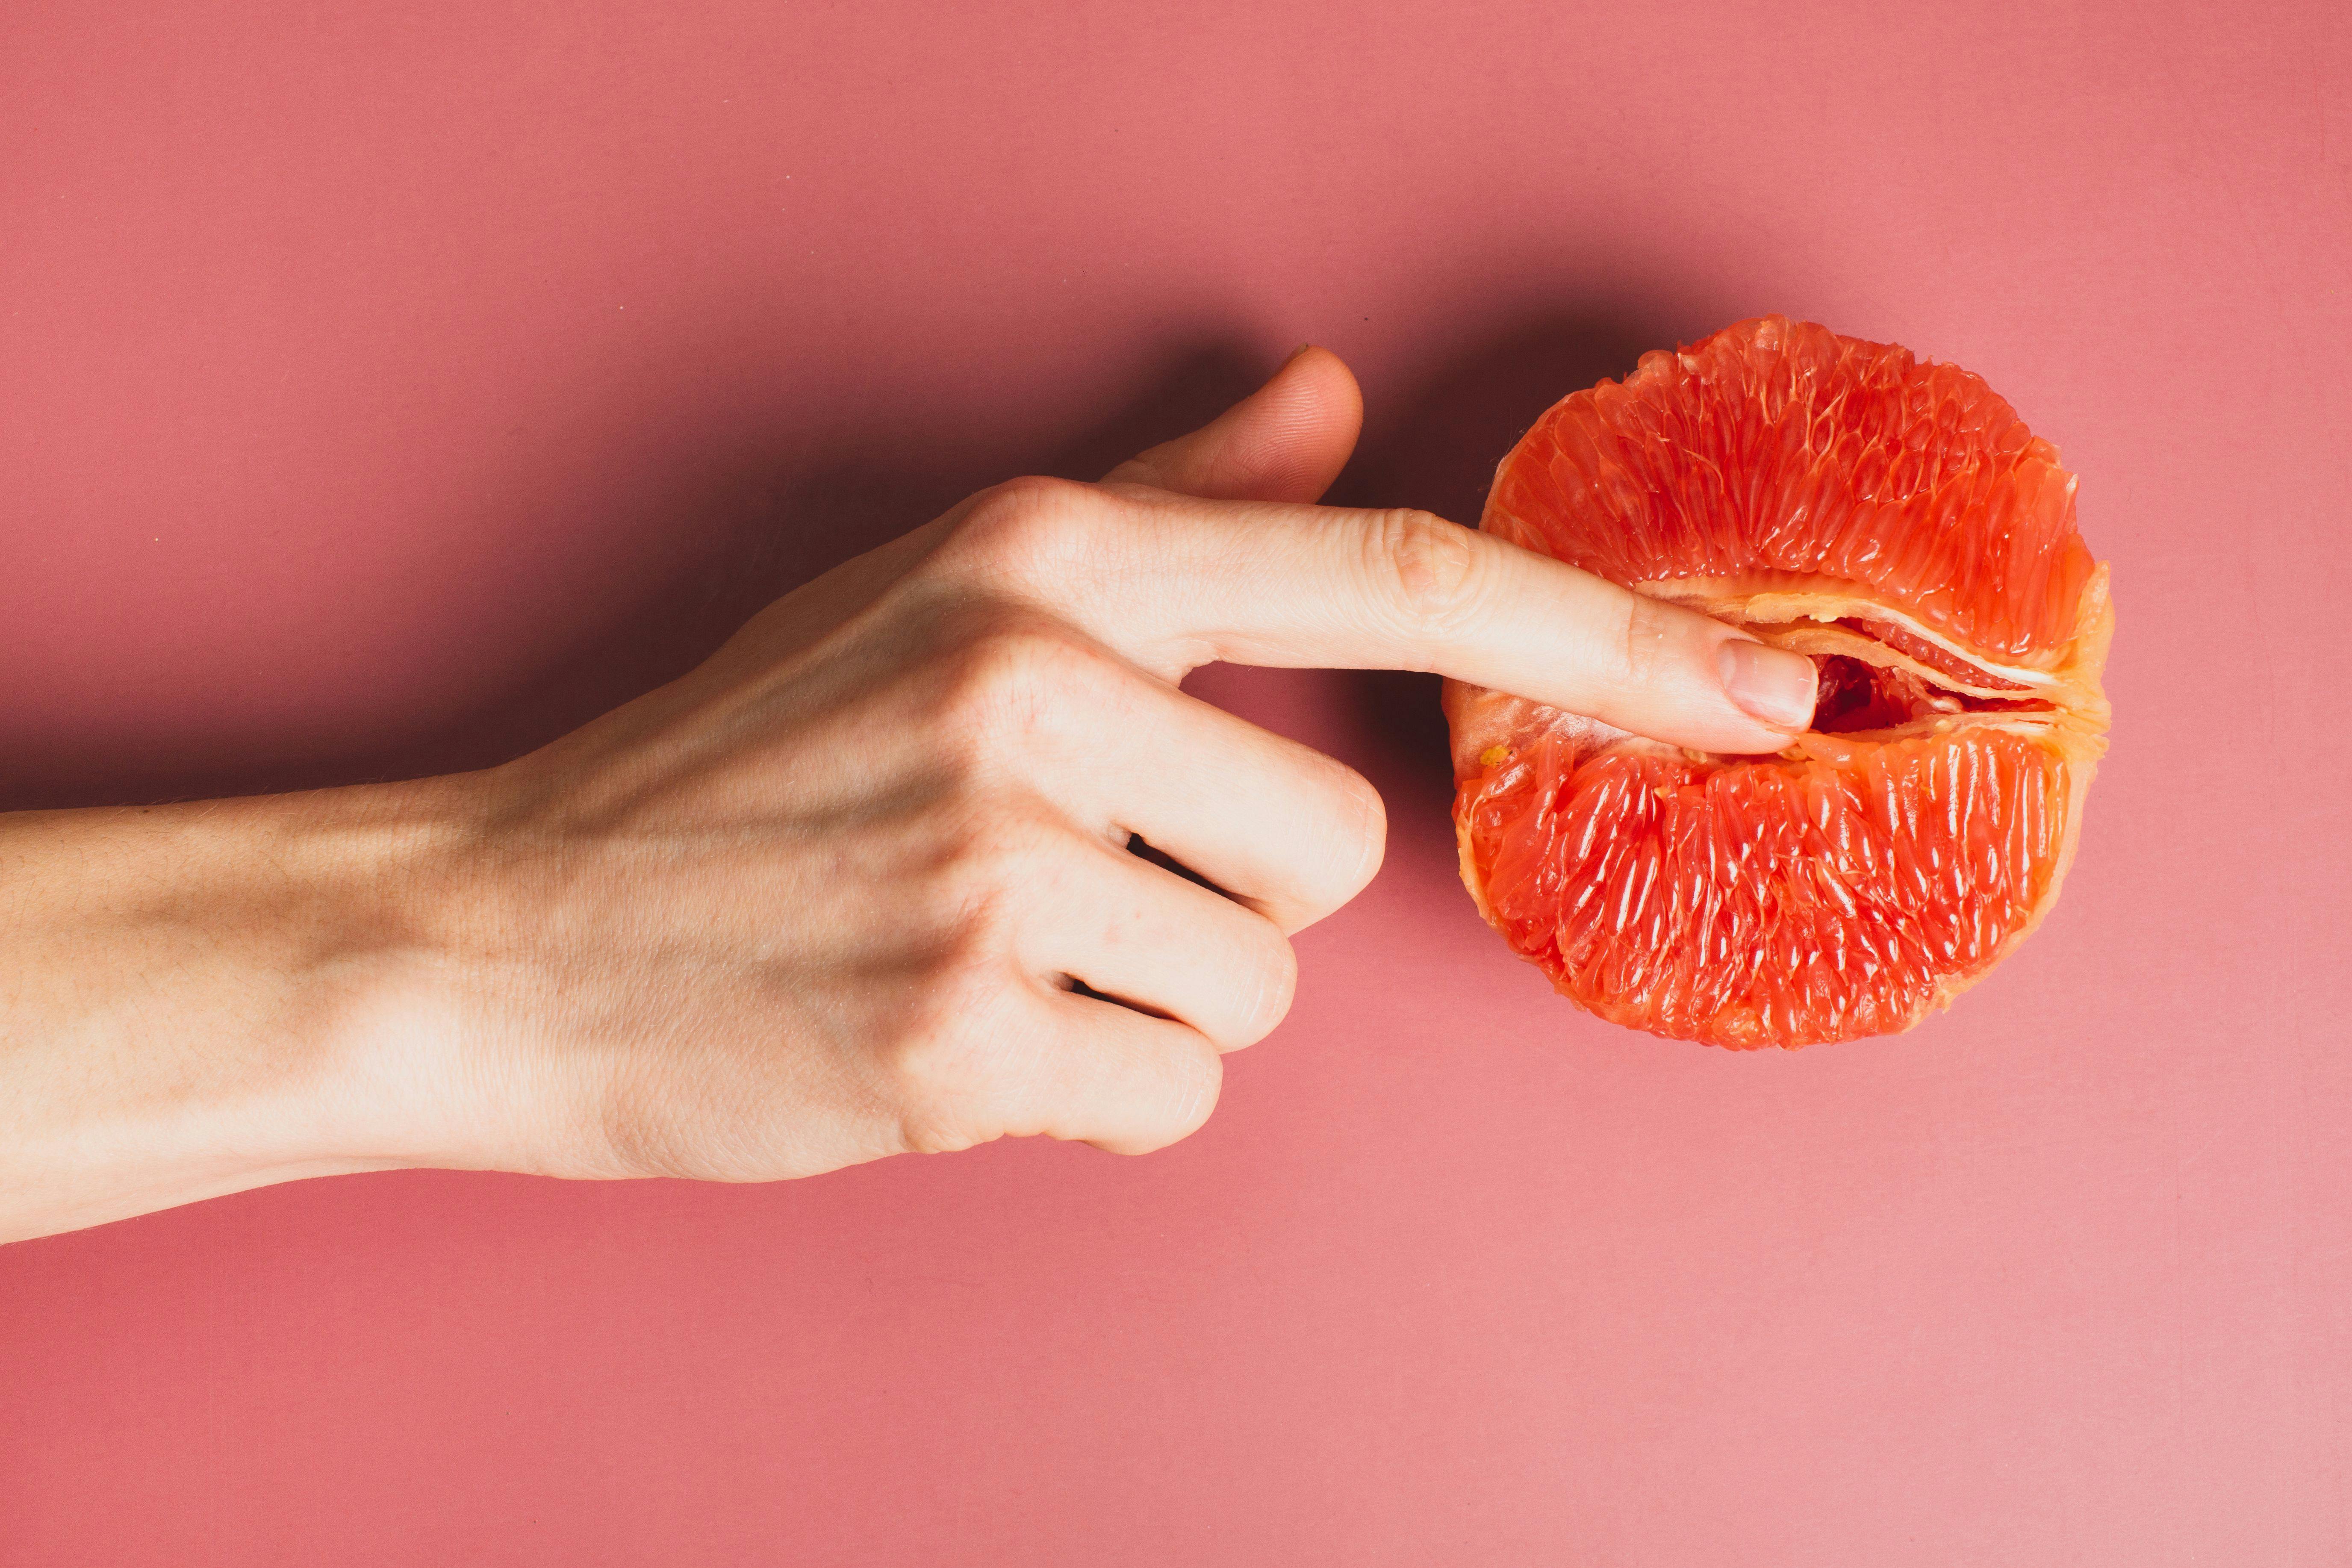 Alle ved, hvordan en masturberende kvinde ser ud, så her er et billede af en finger i en saftig blodappelsin...